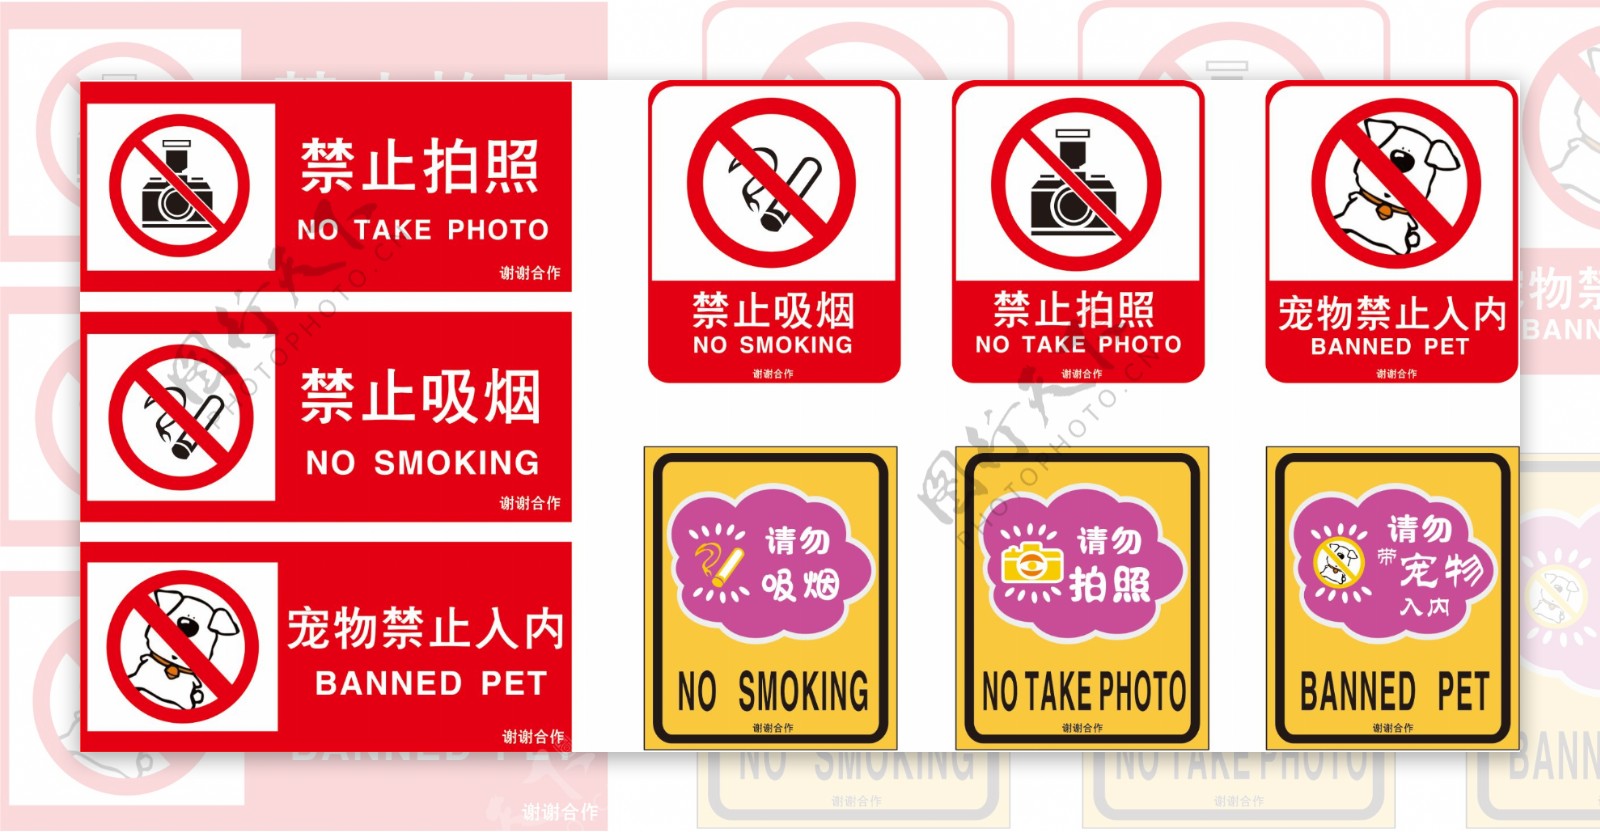 禁止拍照吸烟带宠图片